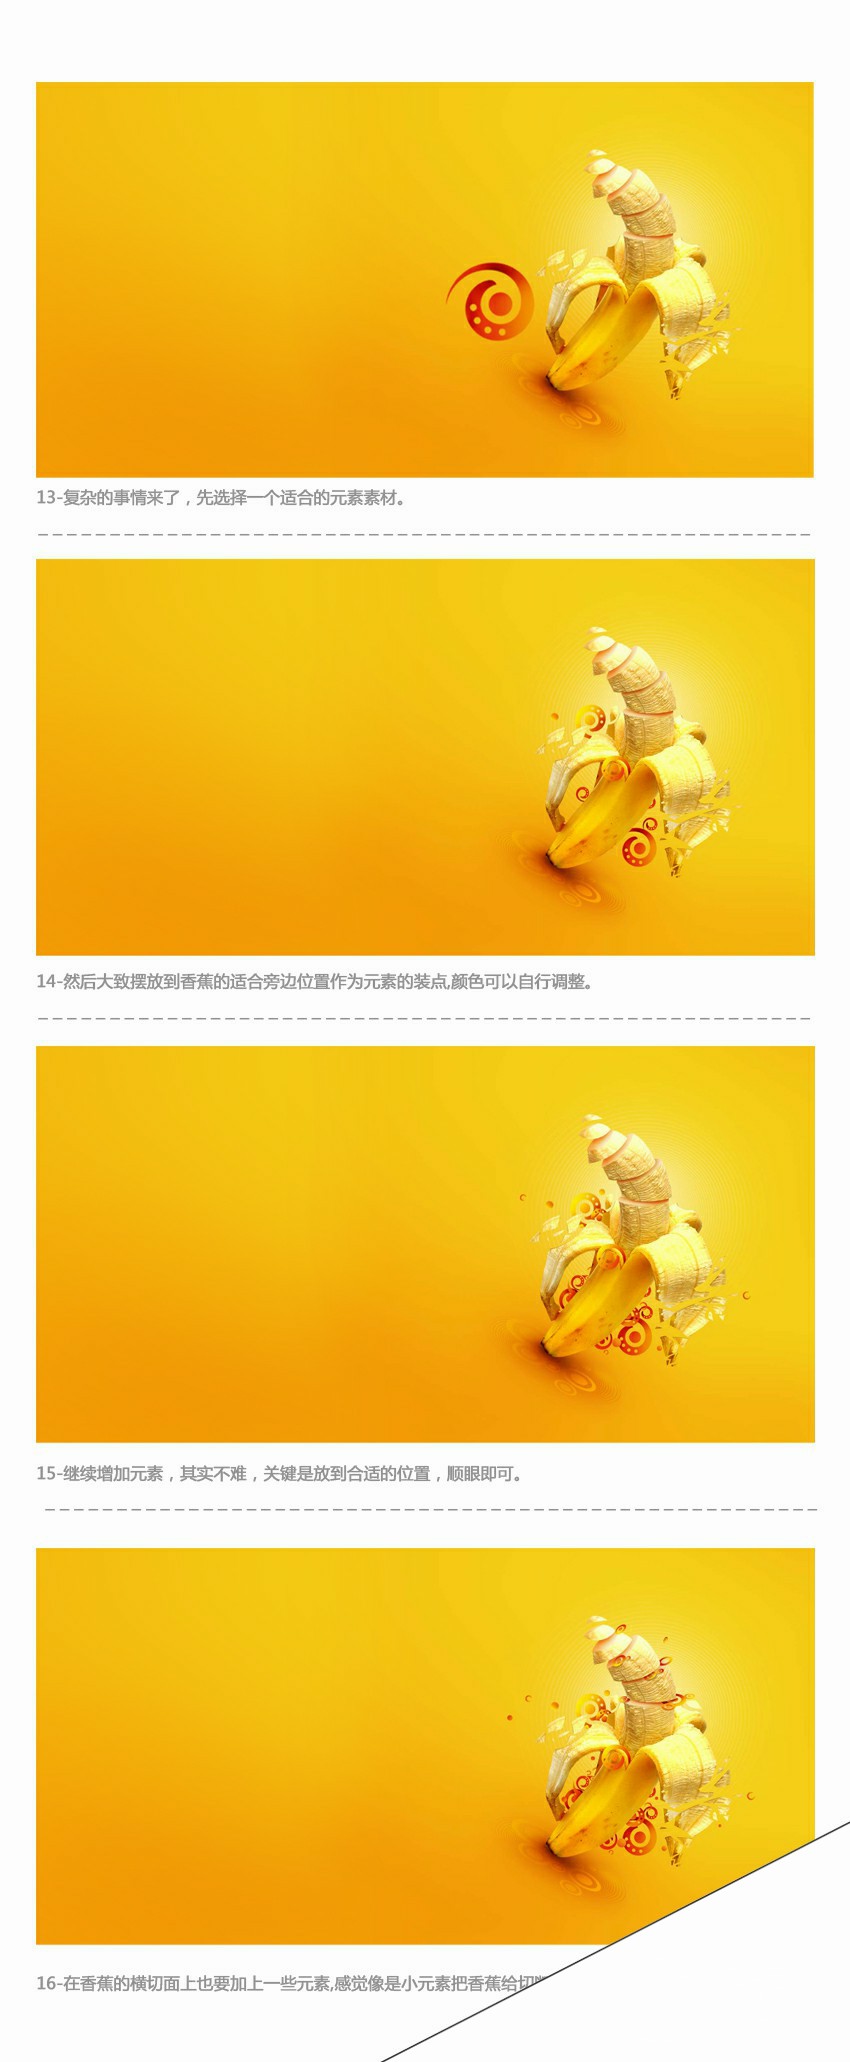 Photoshop制作动感时尚的香蕉派对海报